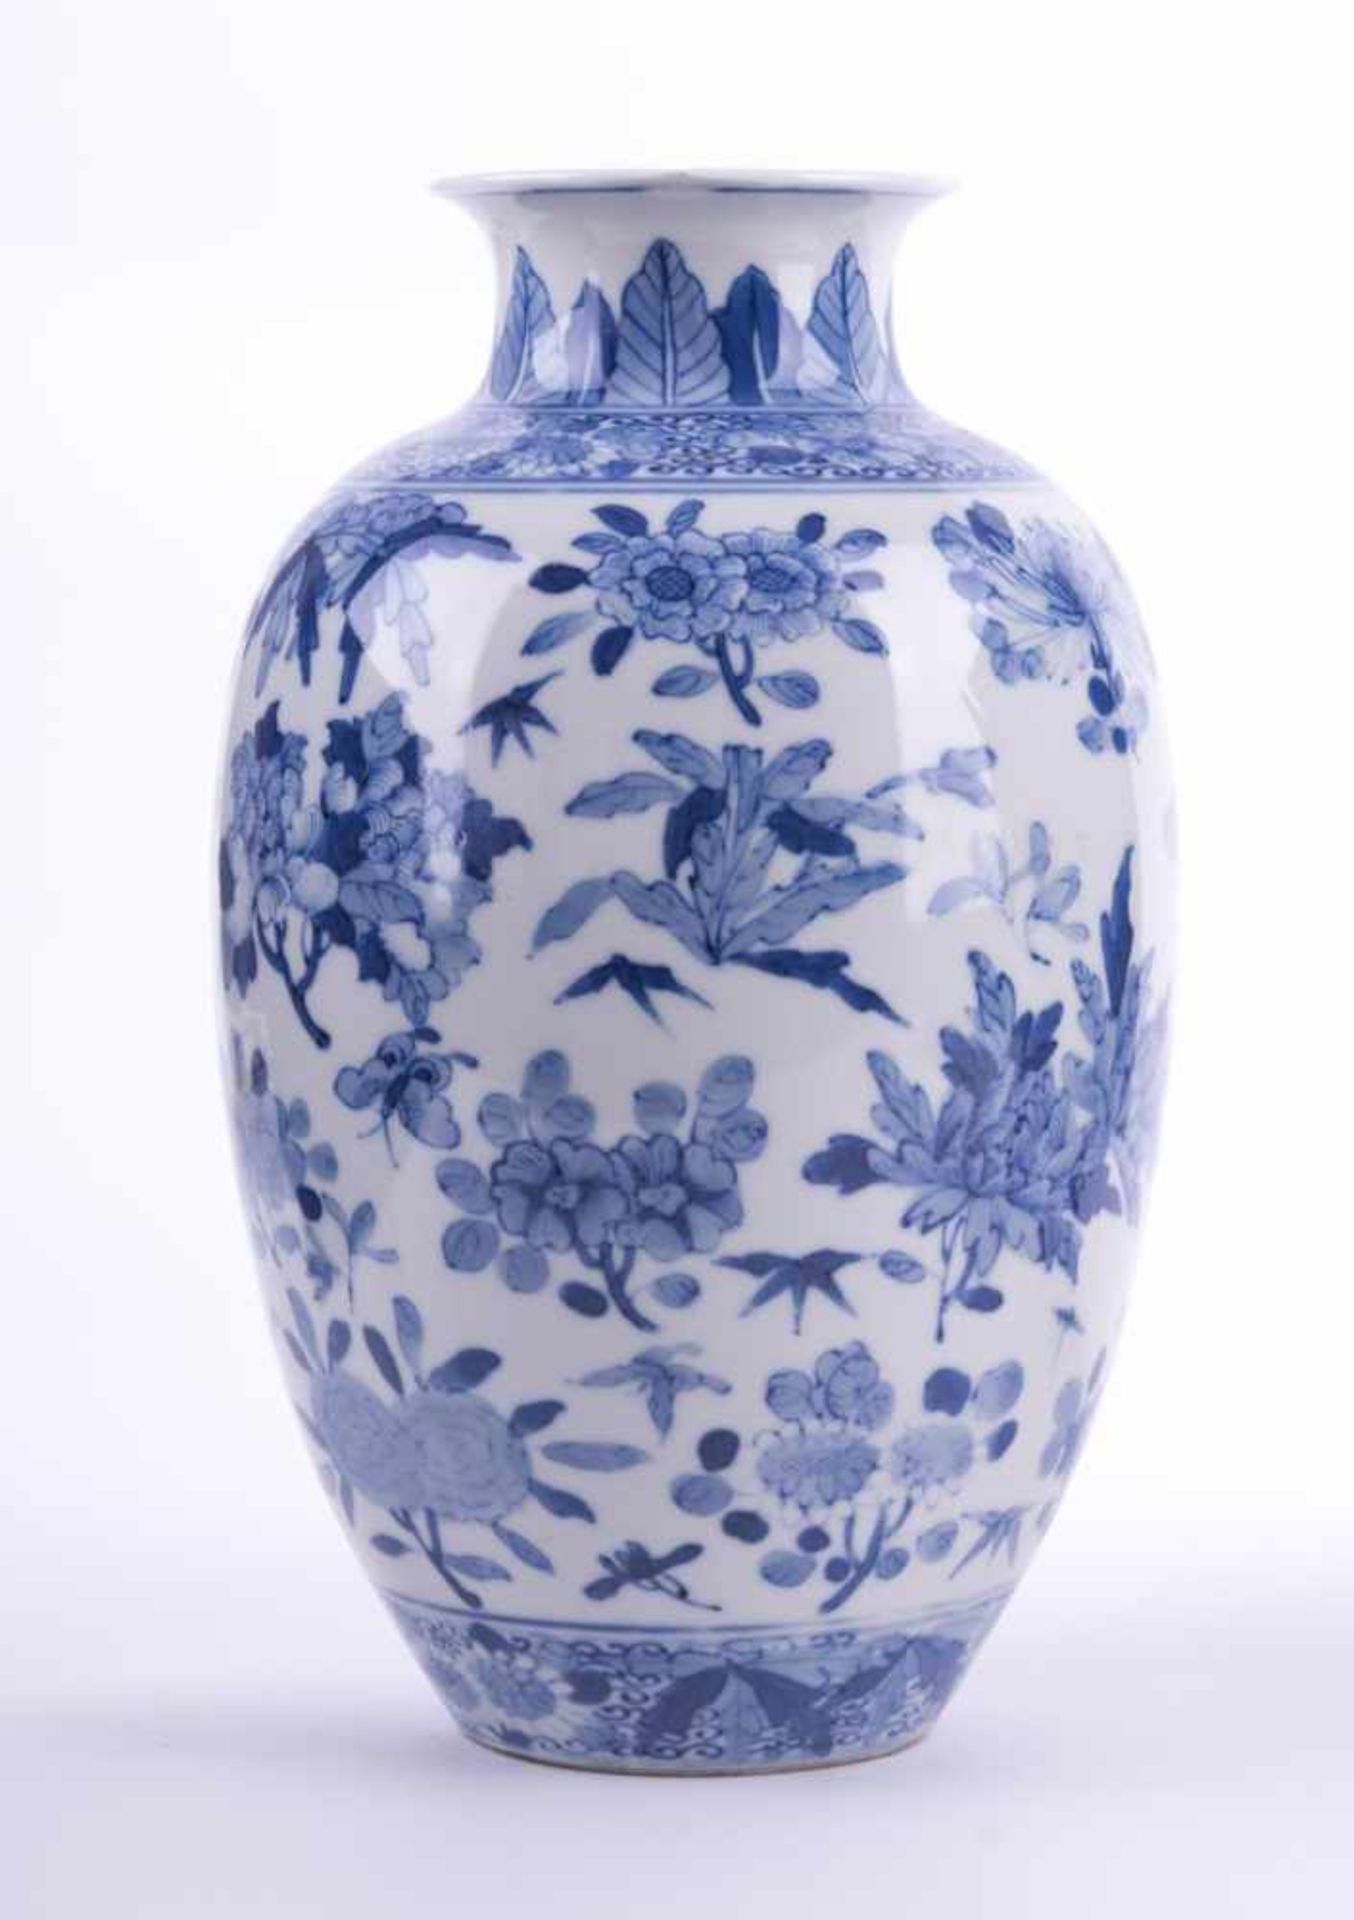 Vase China Chien-lung Periode unterglasurblau bemalt mit floralem- und Insektendekor, am Lippenrand